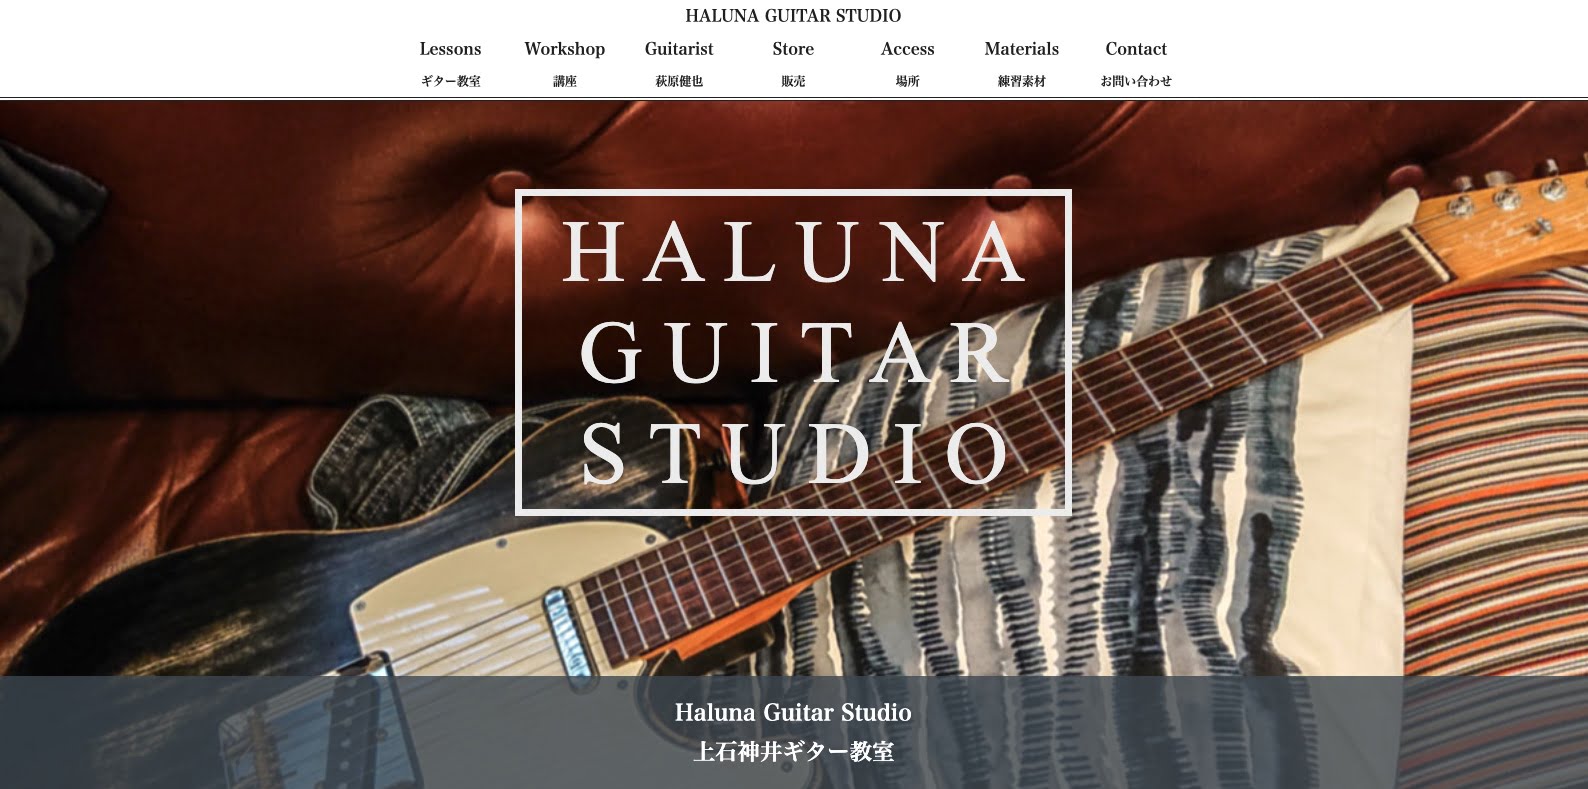 ハルナギタースタジオ